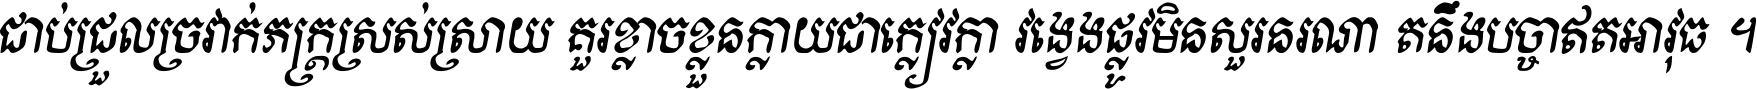 Kh Baphnom Khveak Bold Italic